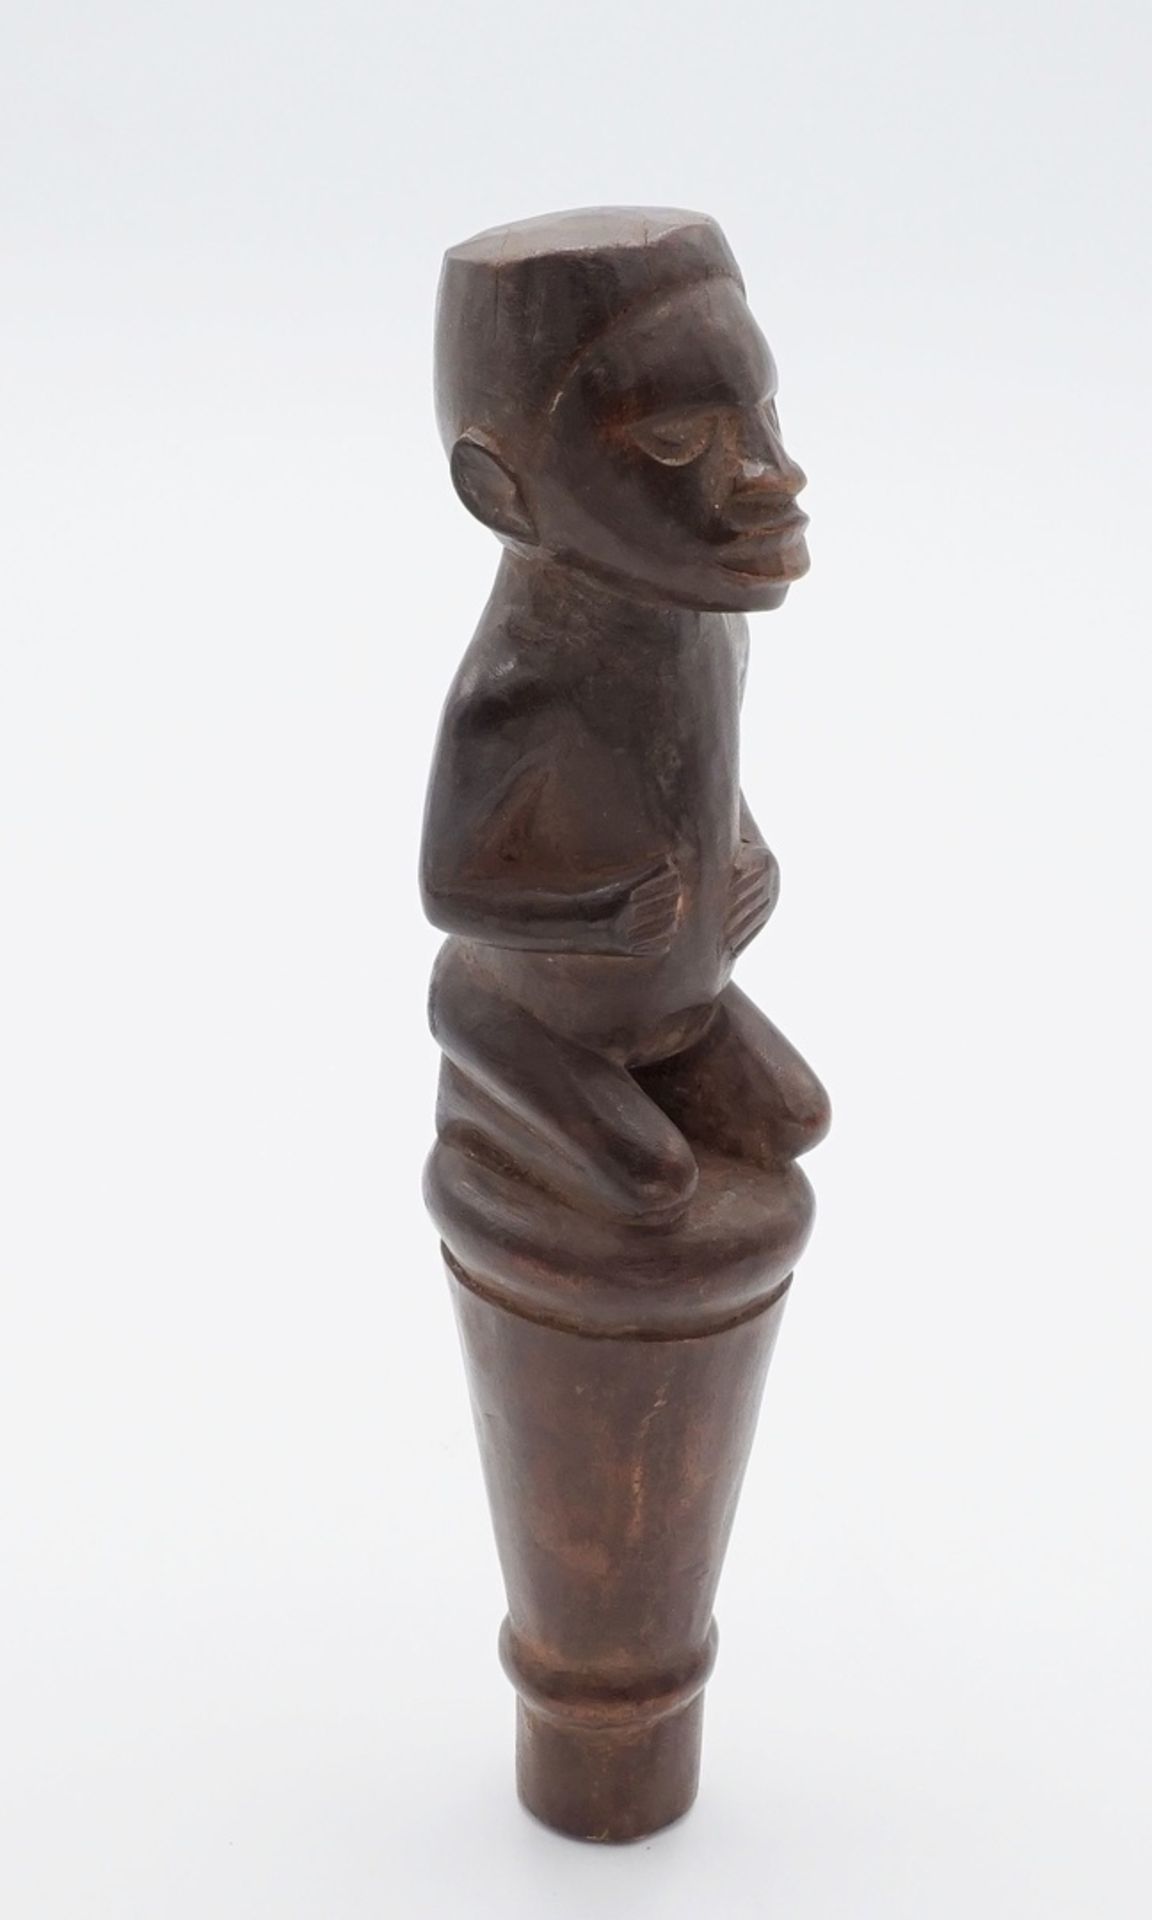 Zepter-Aufsatz Bakongo, DR Kongo, 1. Hälfte 20. Jh.Holz, kniende männliche Figur, auf einem